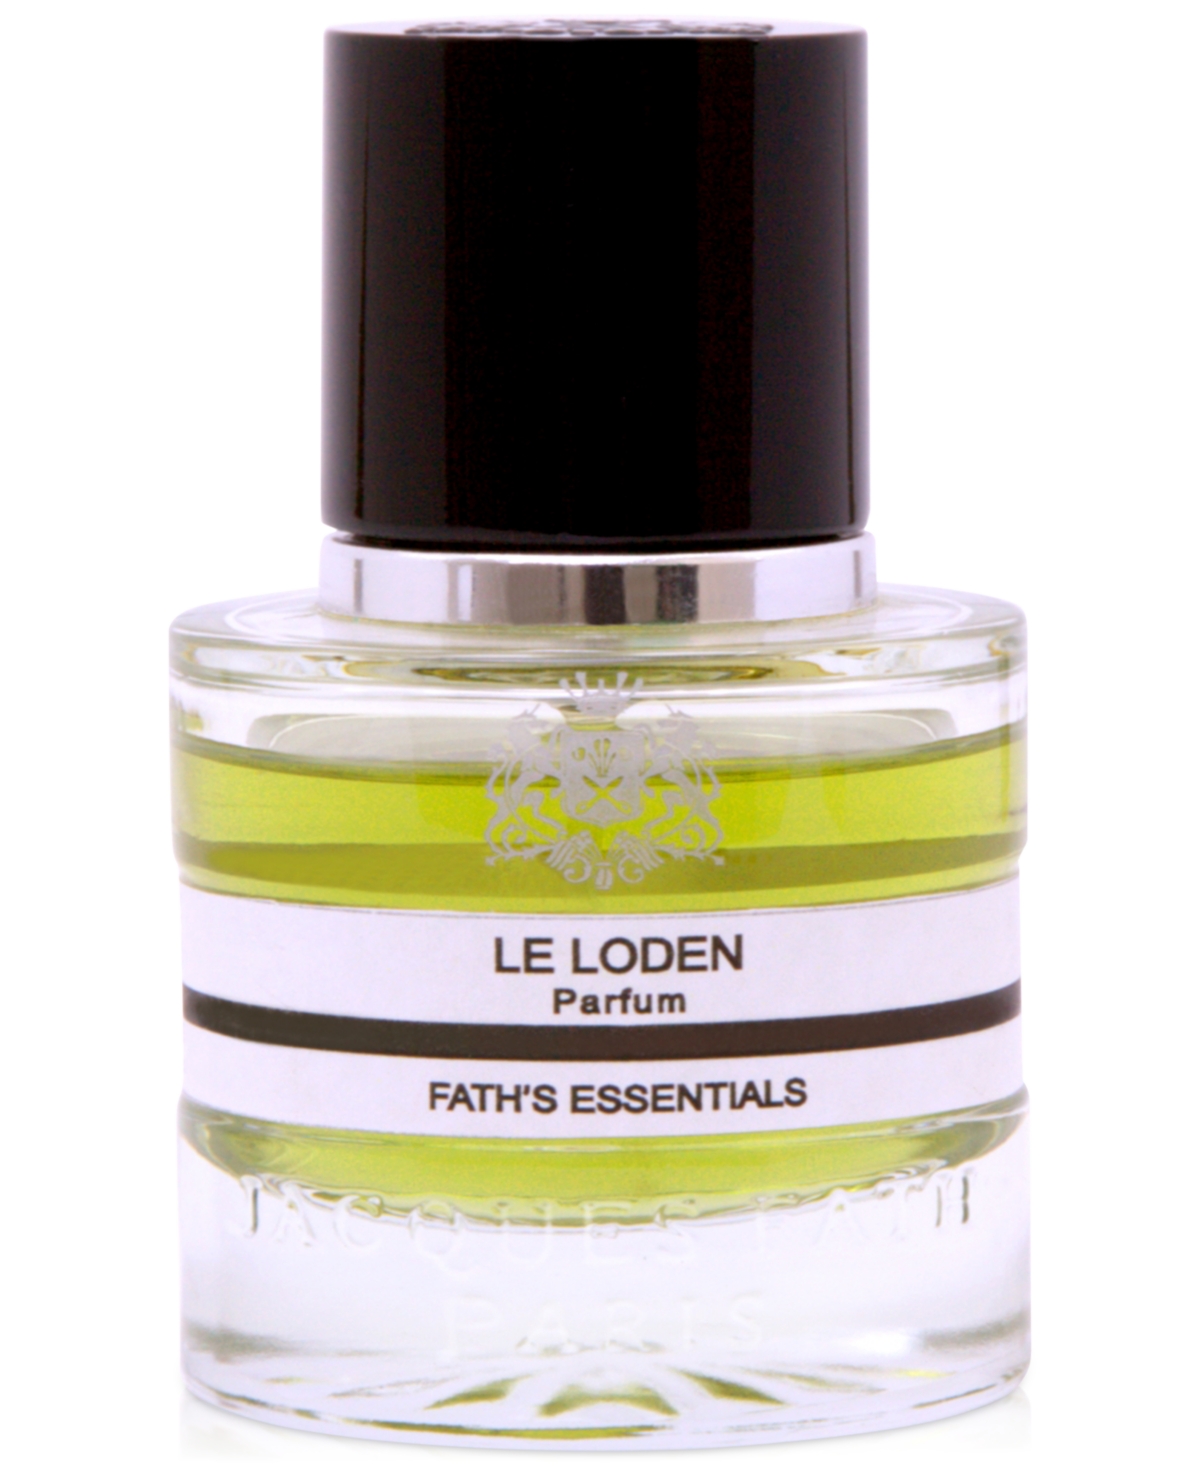 Le Loden Parfum, 1.7 oz.